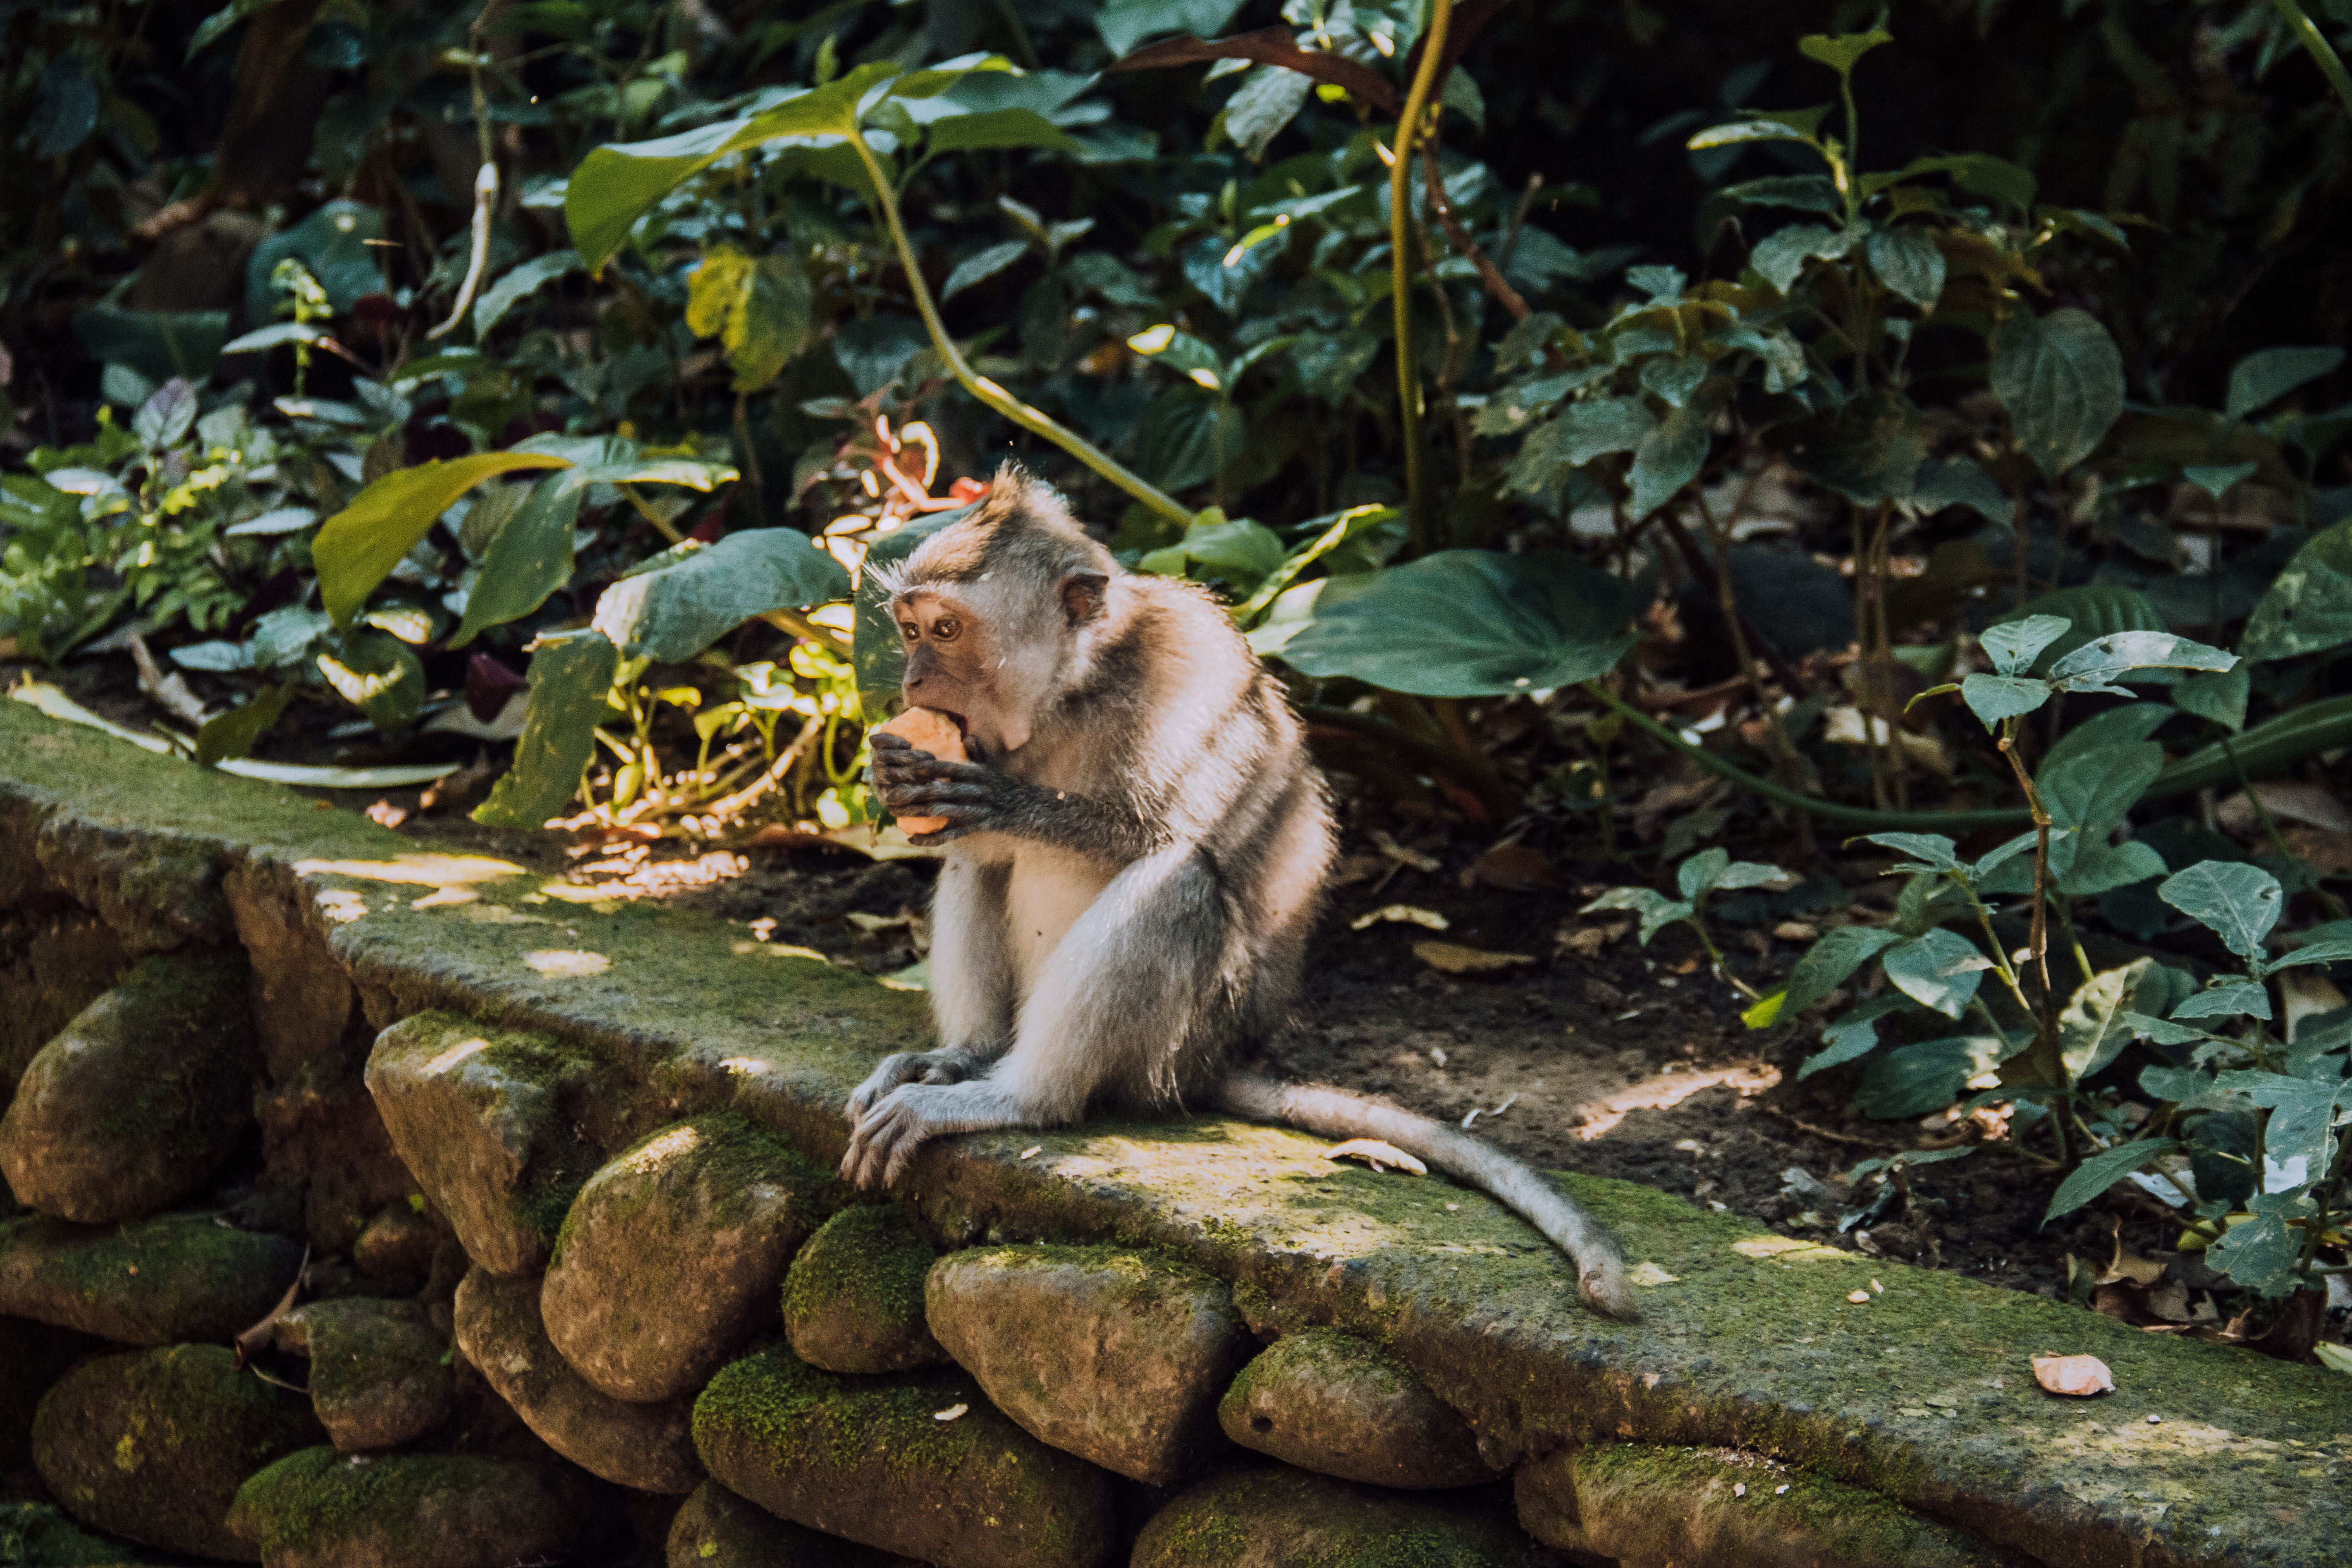 Ubud Monkey Sanctuary